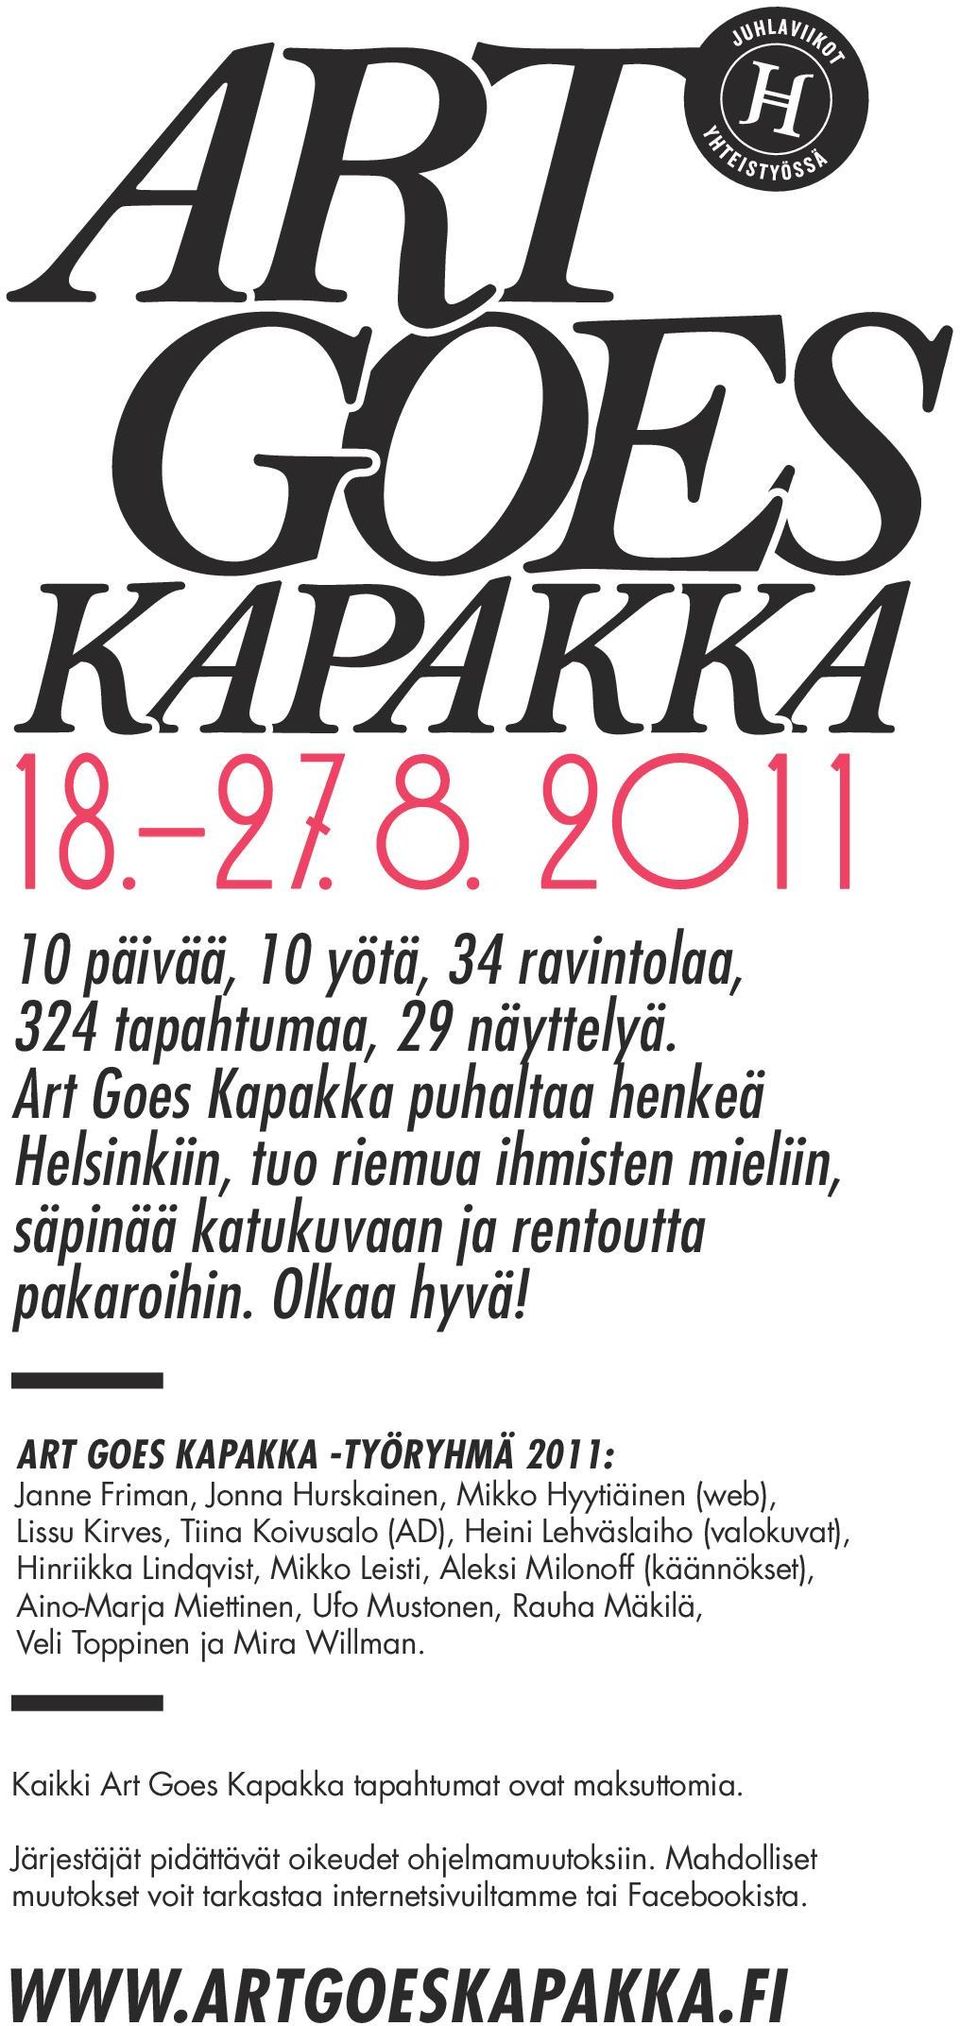 ART GOES KAPAKKA -TYÖRYHMÄ 2011: Janne Friman, Jonna Hurskainen, Mikko Hyytiäinen (web), Lissu Kirves, Tiina Koivusalo (AD), Heini Lehväslaiho (valokuvat), Hinriikka